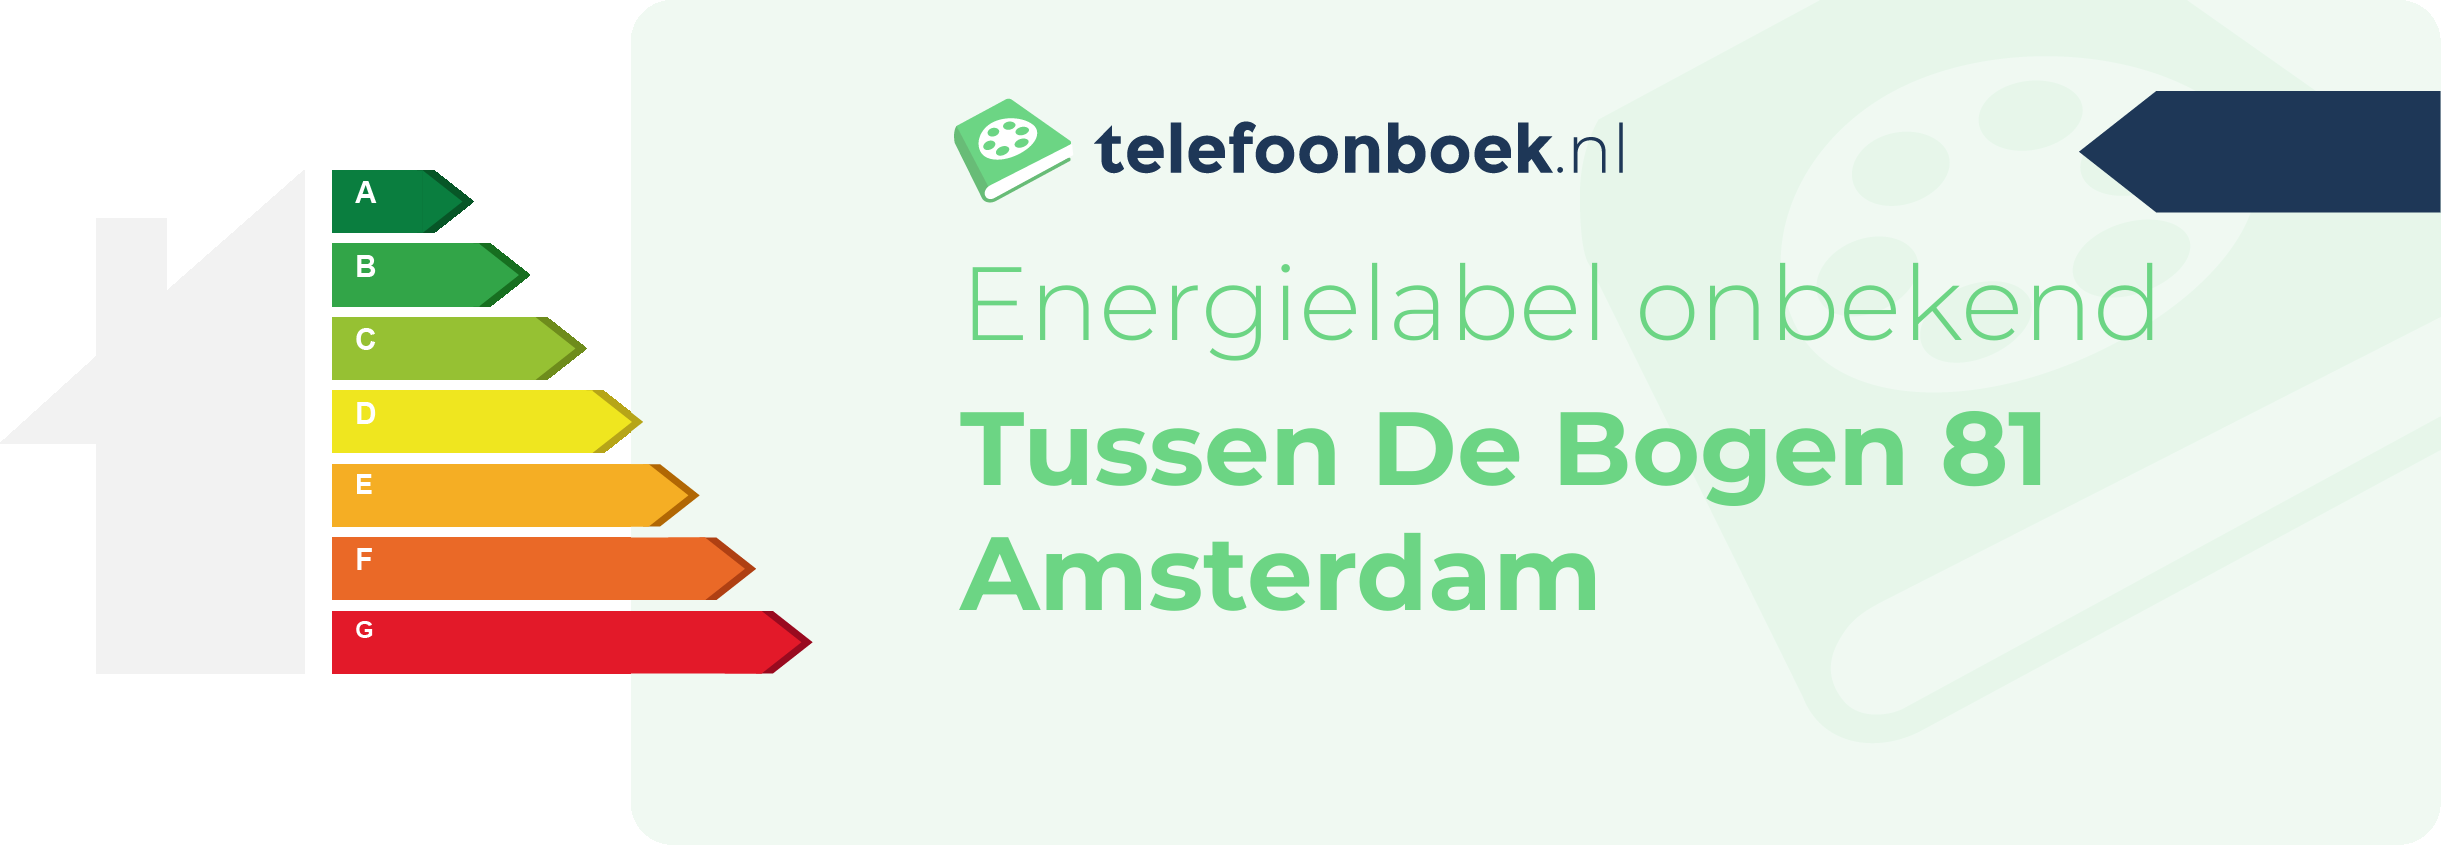 Energielabel Tussen De Bogen 81 Amsterdam